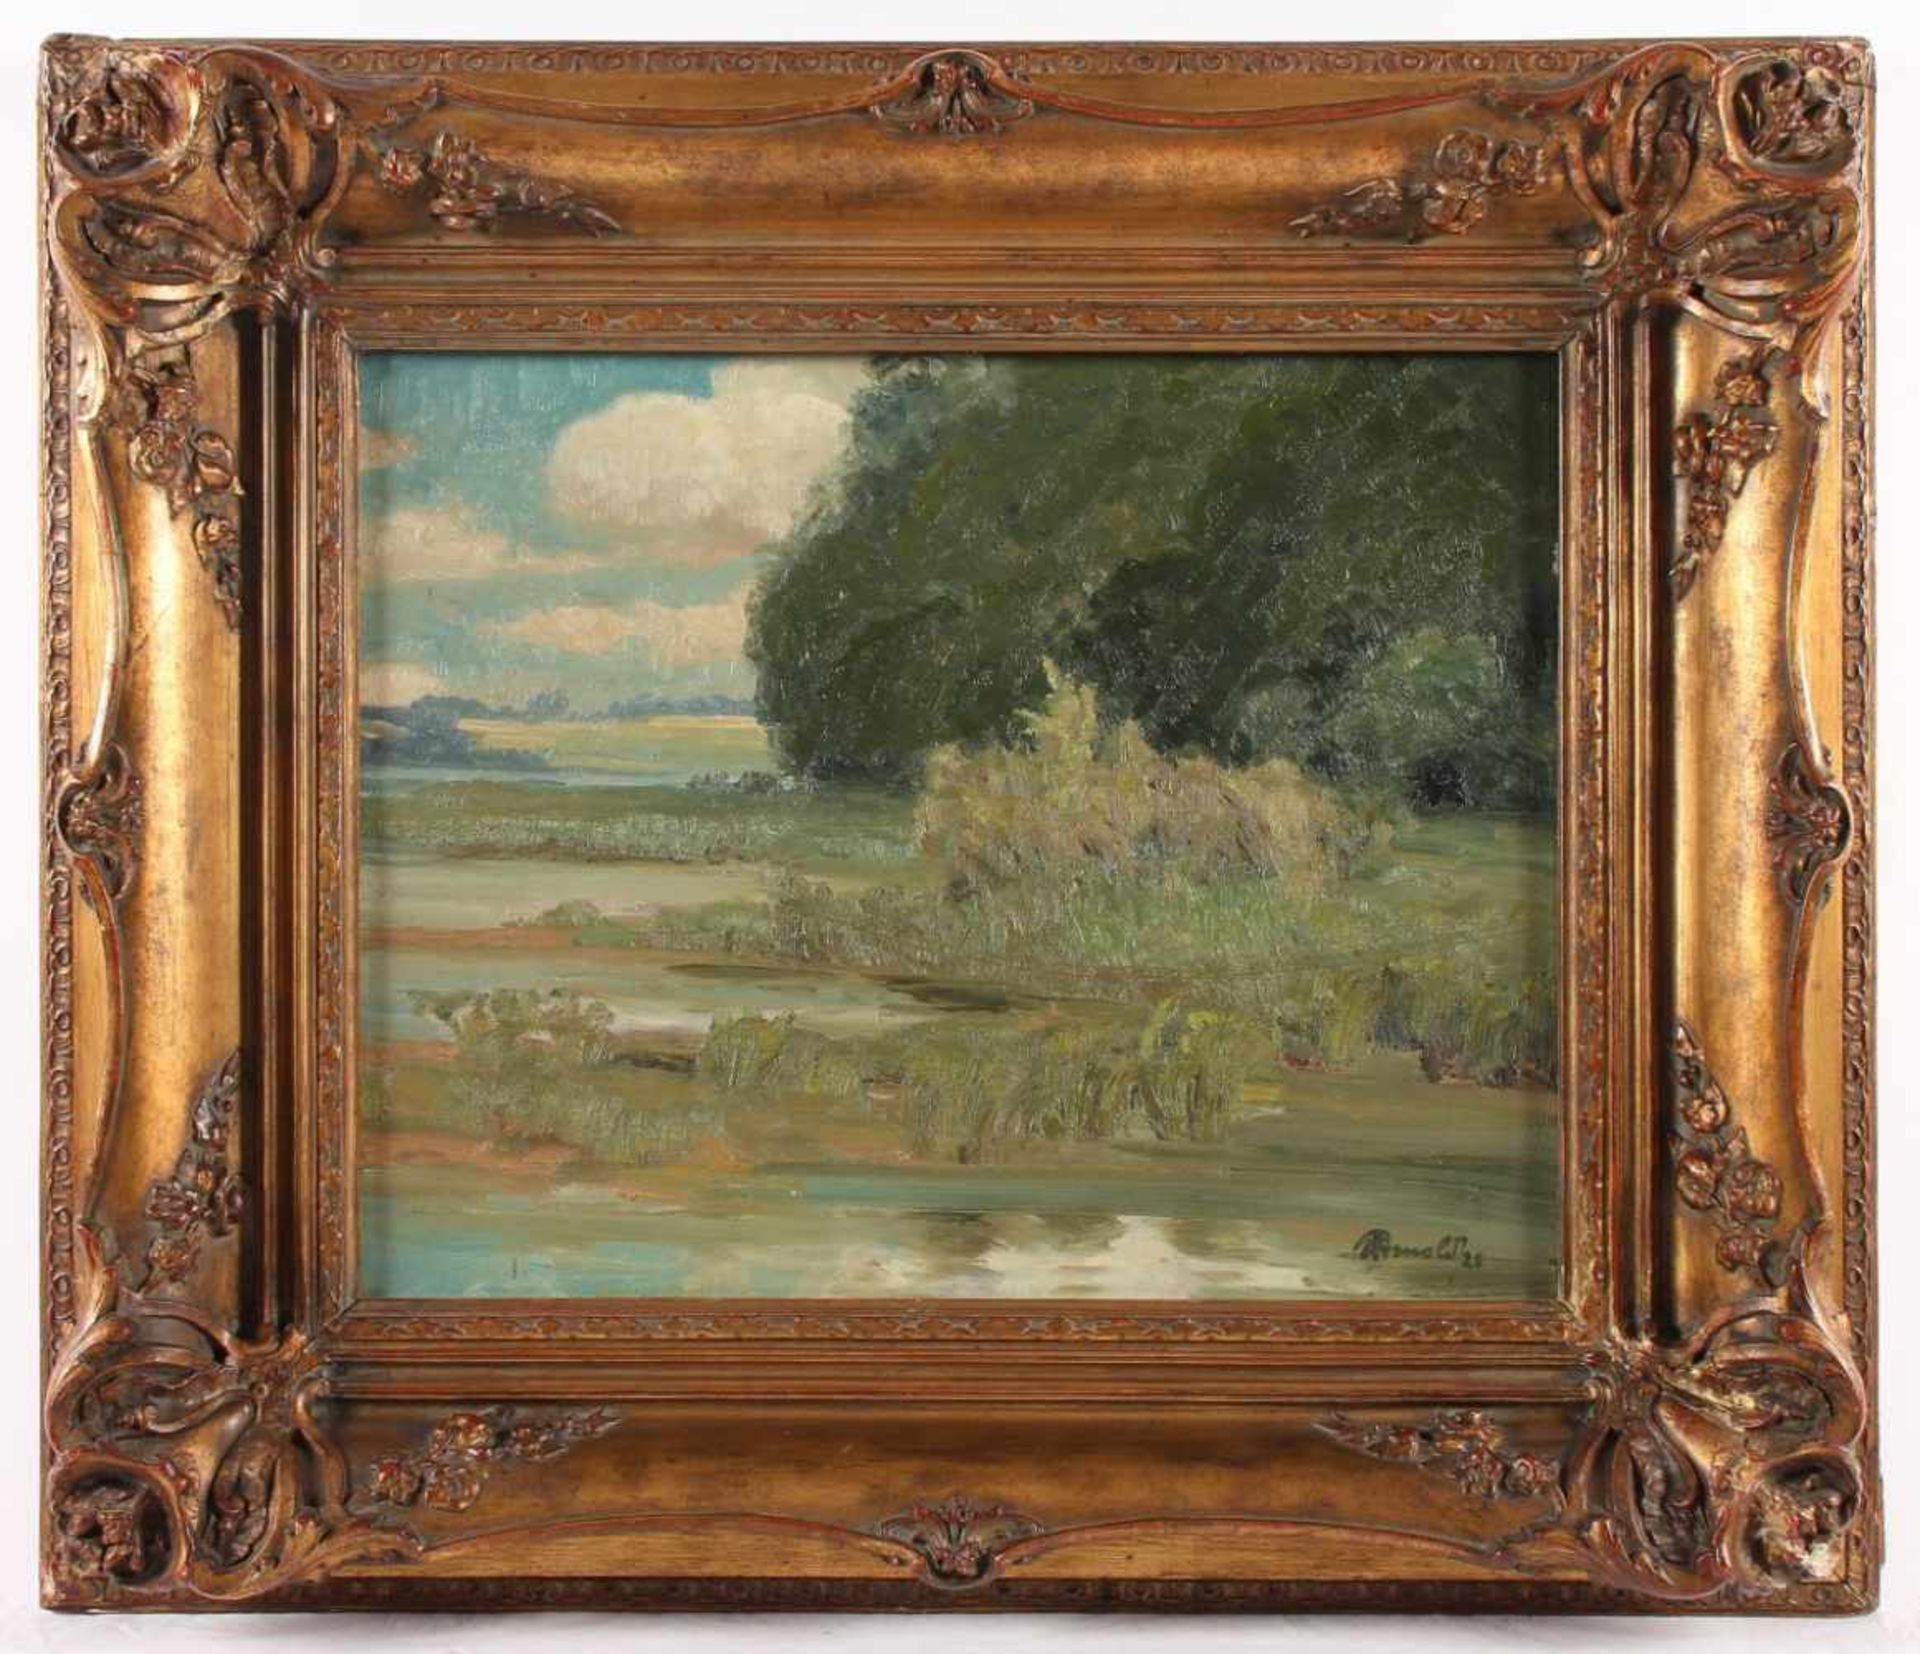 ARNOLD (Maler um 1930), "Uferlandschaft", Öl/Lwd., 41 x 50,5, unten rechts signiert und "28"